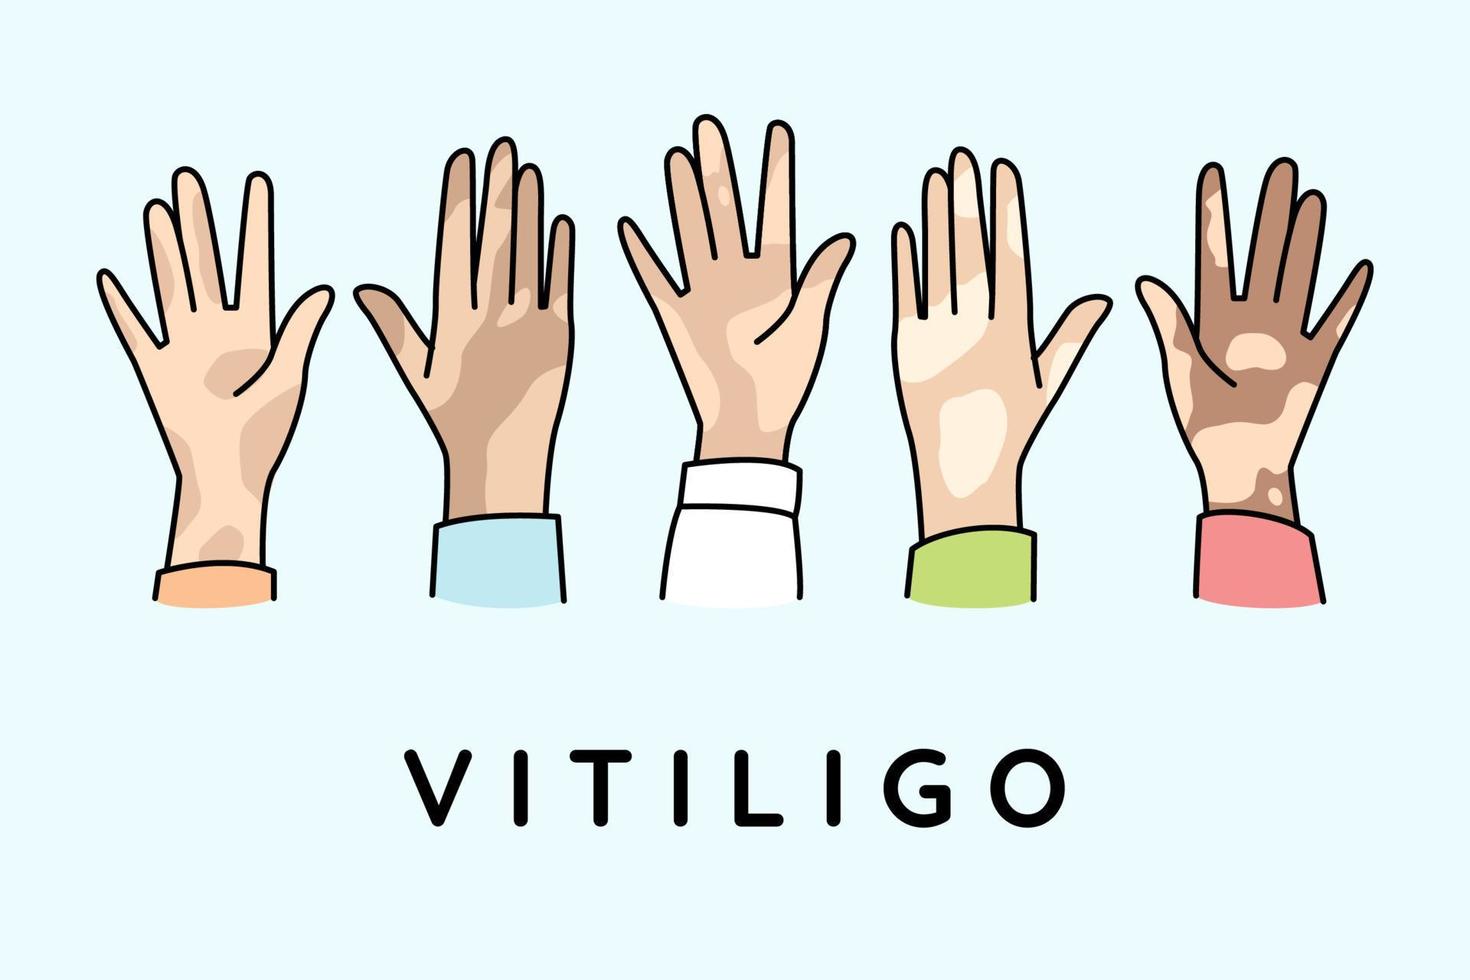 Verschiedene Hände von Menschen leiden an Vitiligo-Krankheit. Menschen kämpfen mit Pigmentierung am Körper. Konzept des Welt-Vitiligo-Tages. Vektor-Illustration. vektor